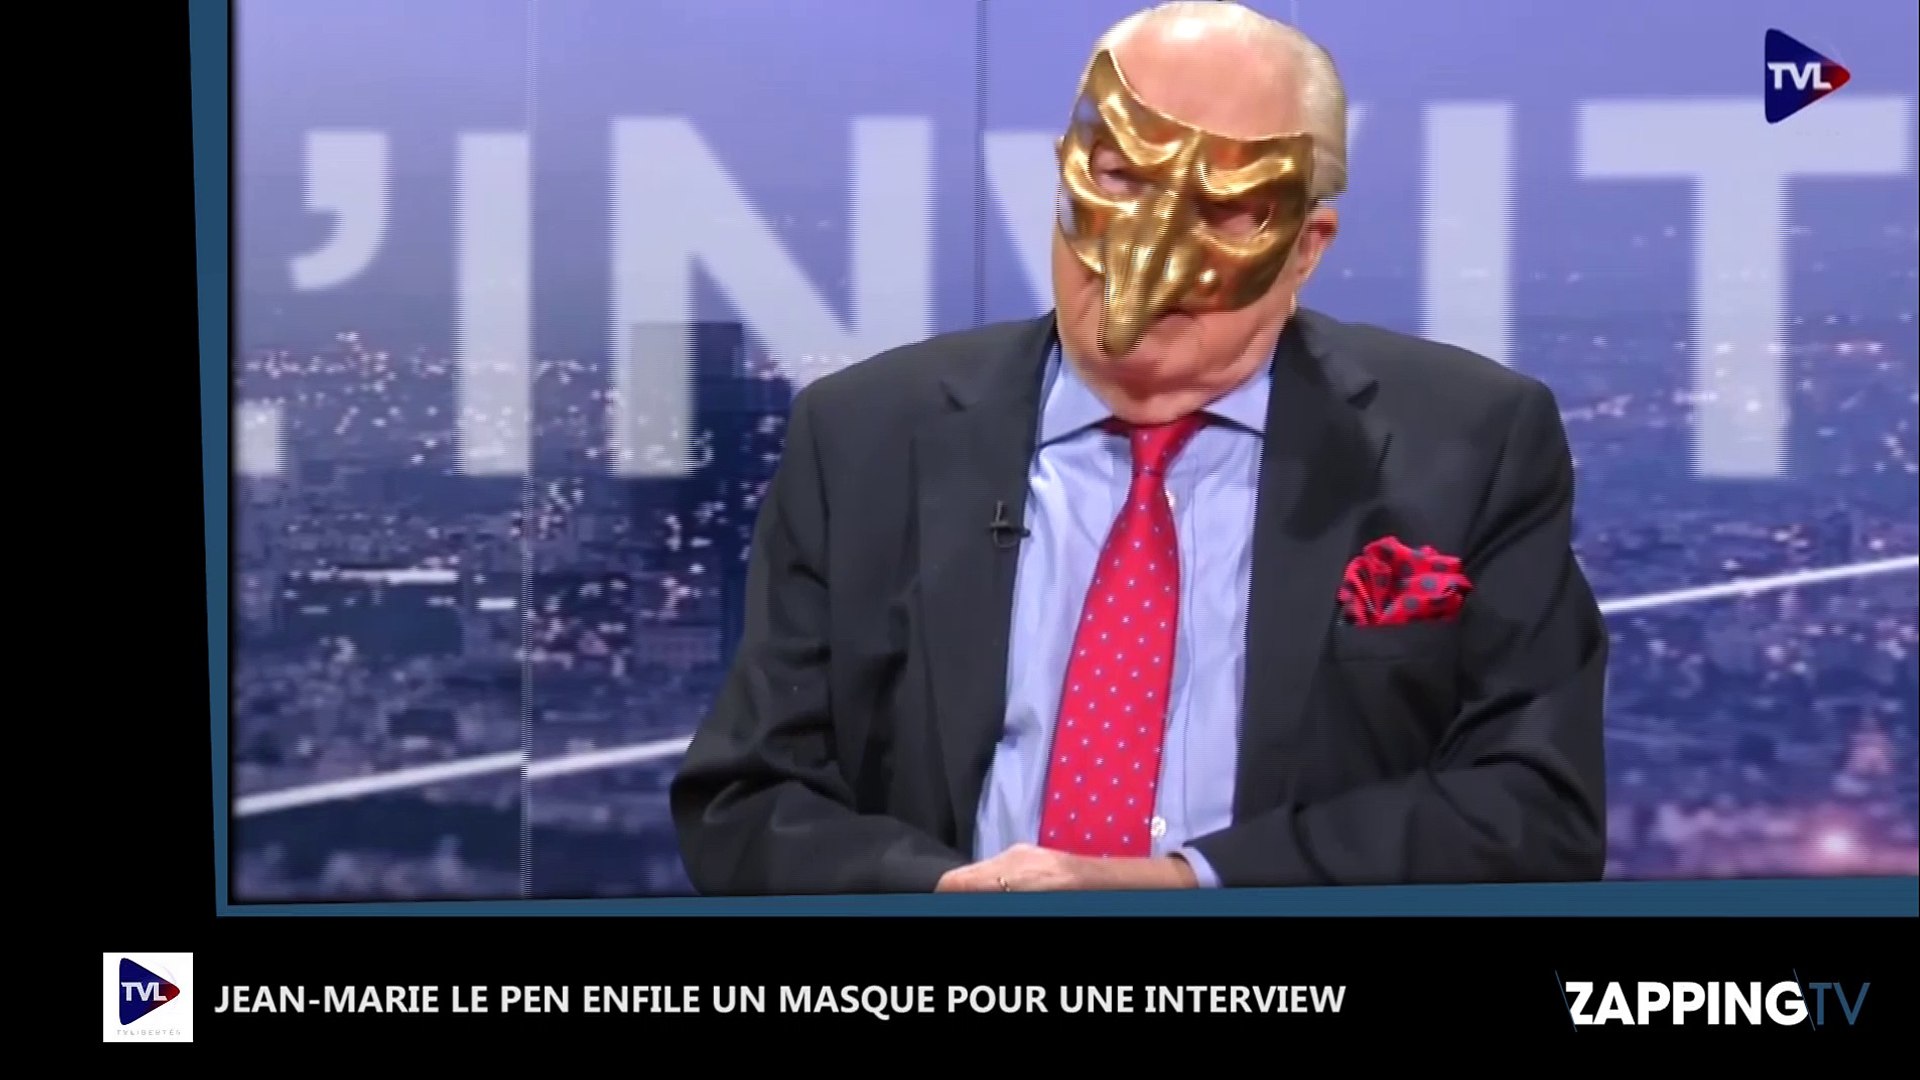 Jean-Marie Le Pen joue l'invité masqué pour une interview, la vidéo buzz !  - Vidéo Dailymotion